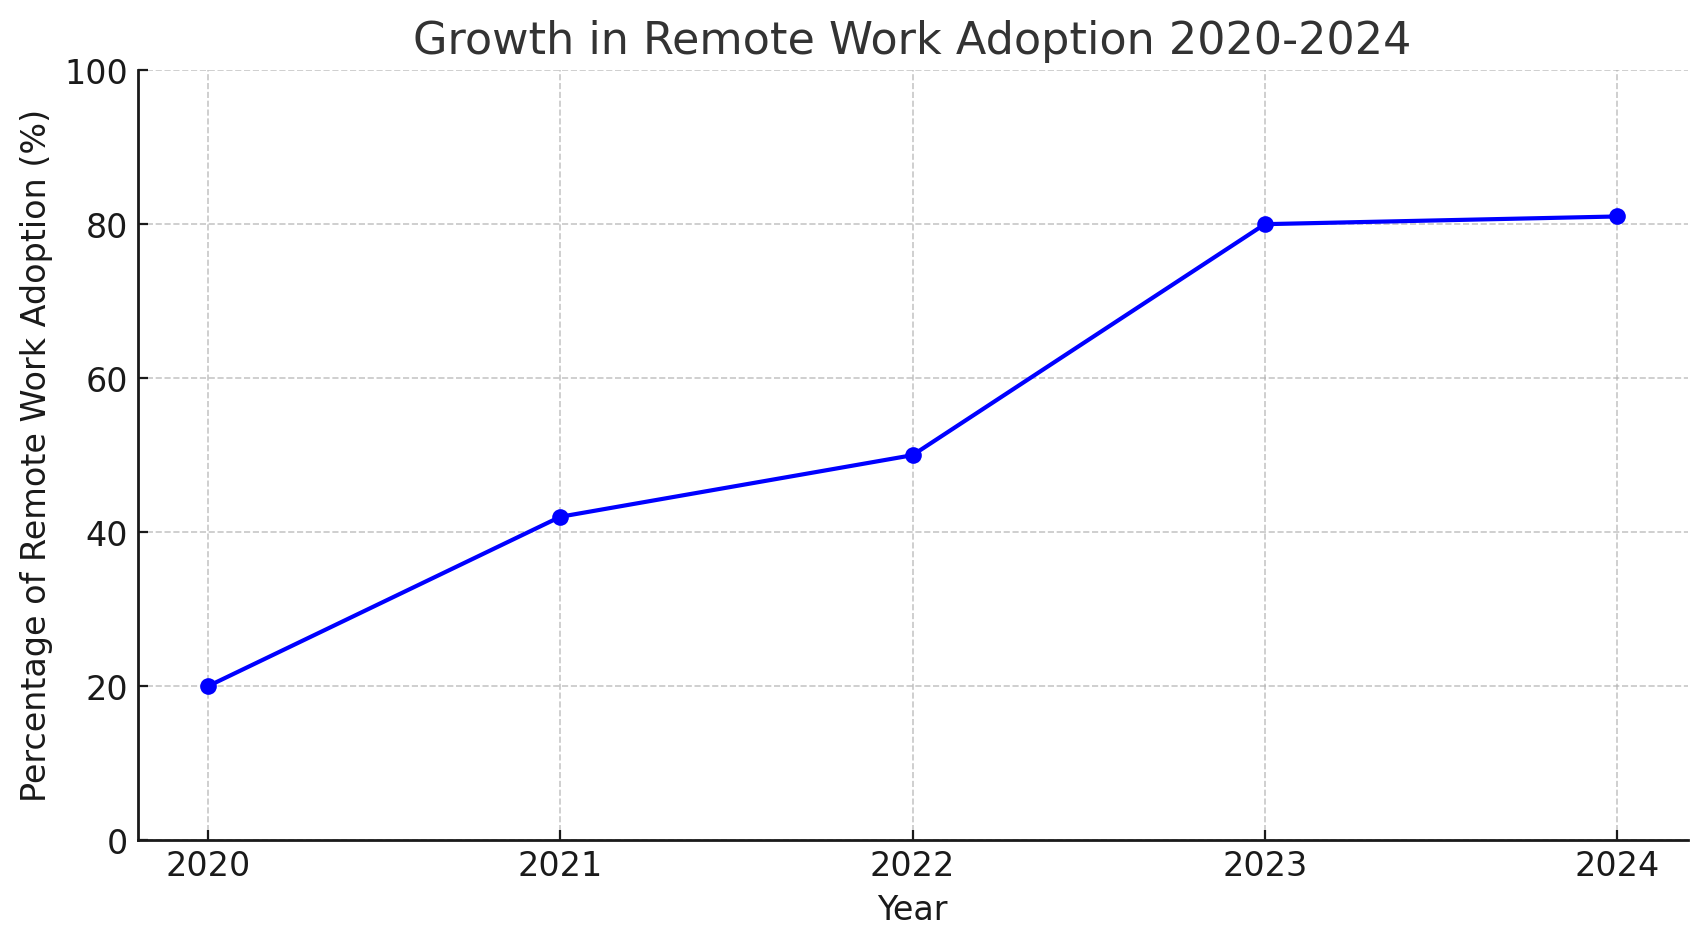 折线图显示了 2020 年至 2024 年远程工作采用率的增长情况。这一趋势始于 2020 年的 20%，上升到 2021 年的 42%，2022 年的 50%，在 2023 年达到峰值 80%，并在 2024 年趋于平稳。该图表显示了远程工作实践的稳步增长，突显出工作习惯向更灵活的工作环境发生了重大而持久的转变。